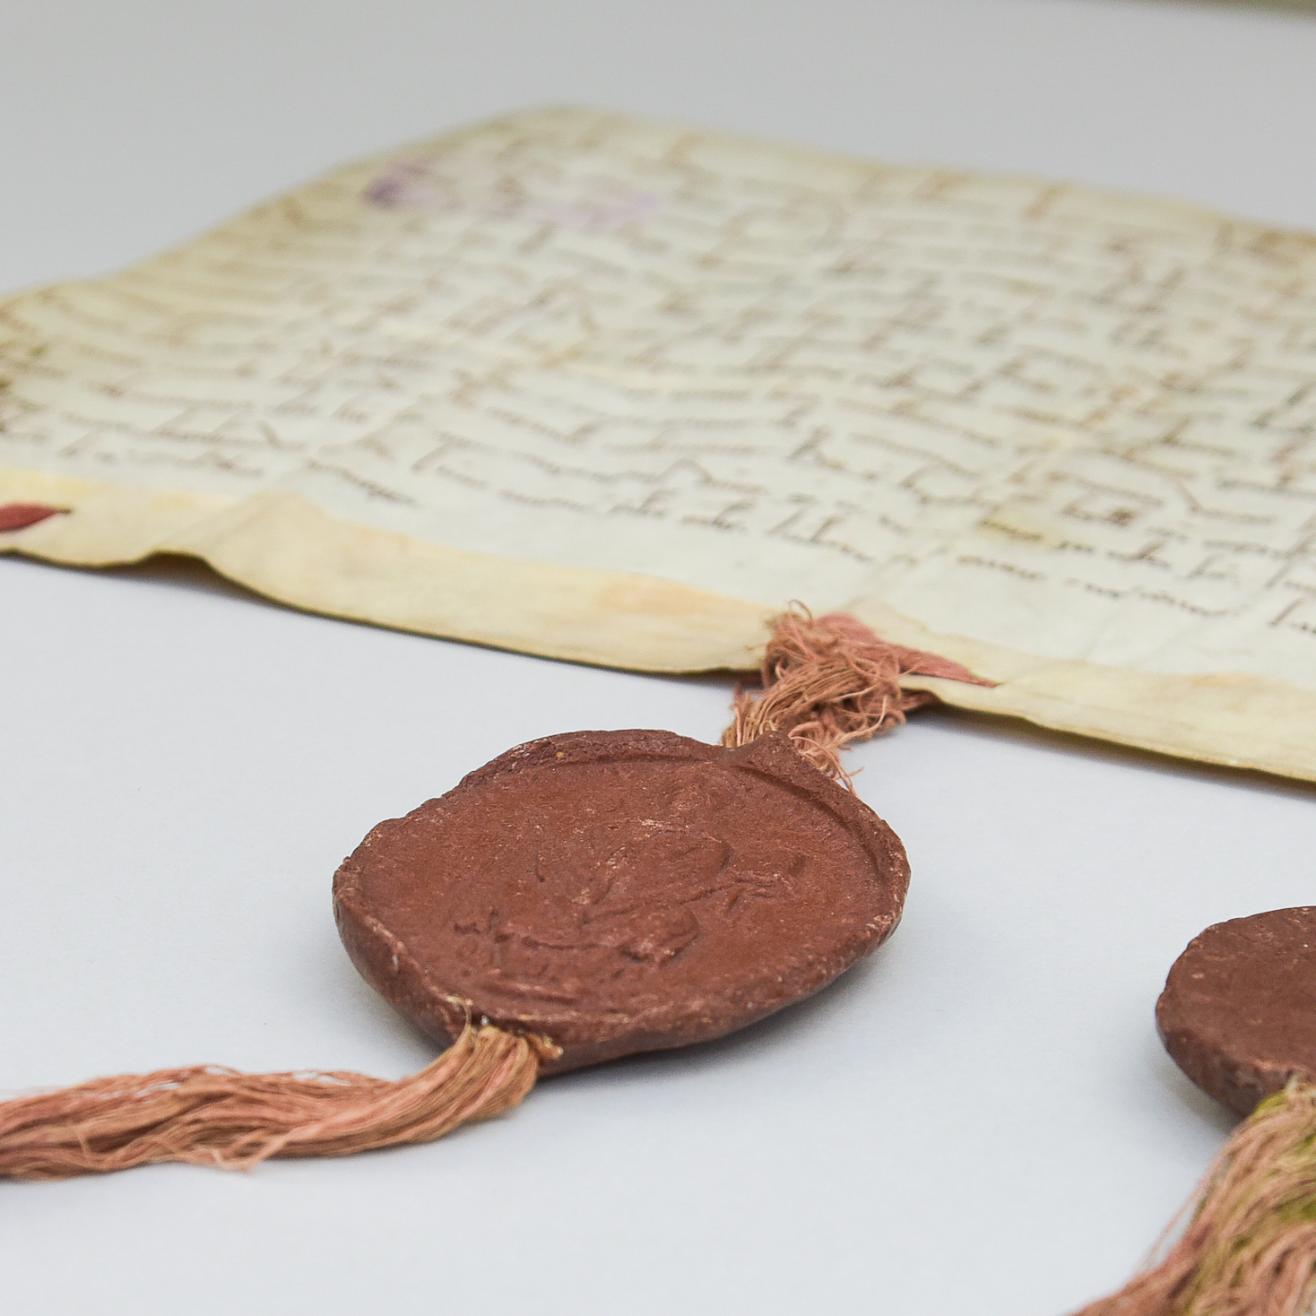 Eine alte Pergament-Handschrift mit drei Bändern am unteren Rand, an denen drei dunkelrote Wachssiegel angebracht sind.